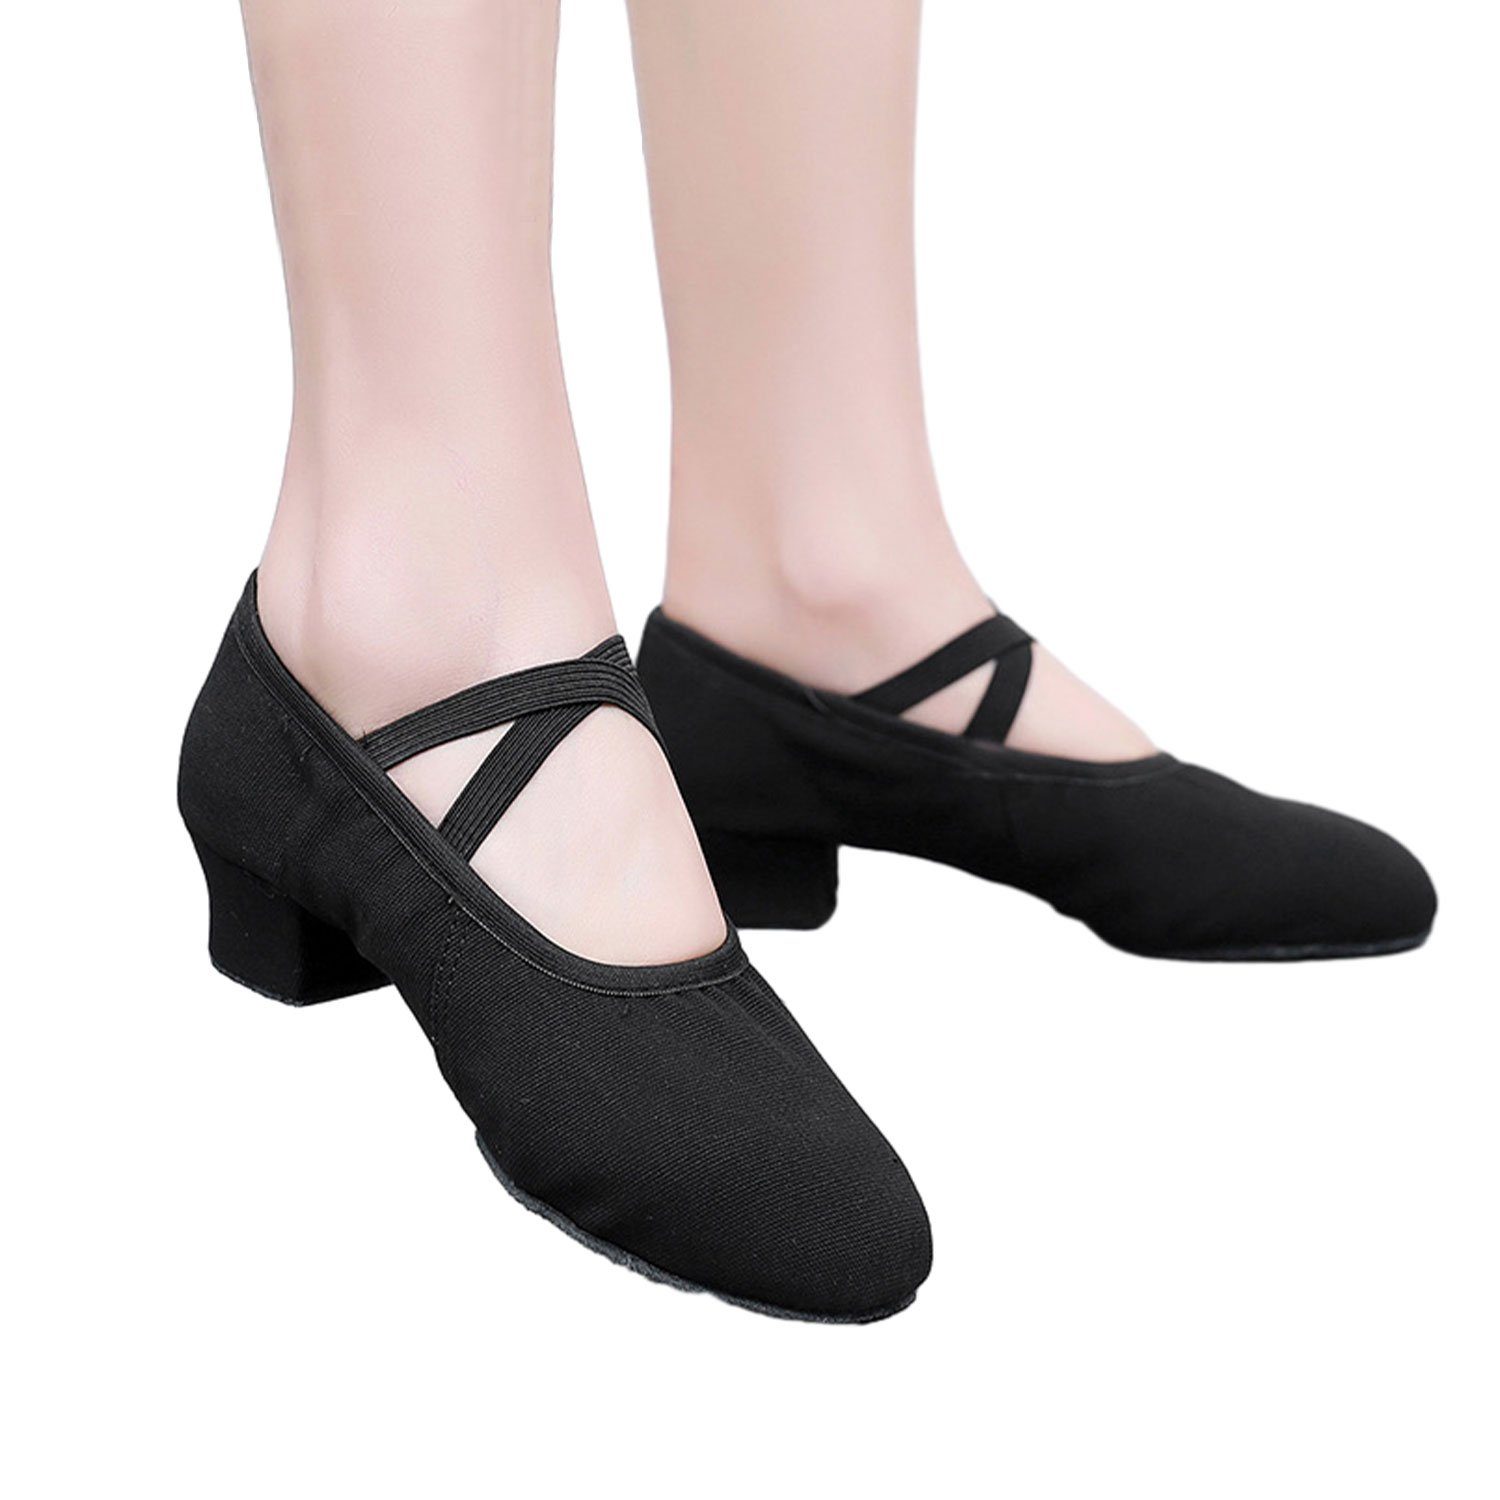 Elegant Damen Schuhe Tanzschuhe Ballerina Daisred Flats Ballerinas Schwarz Bequem